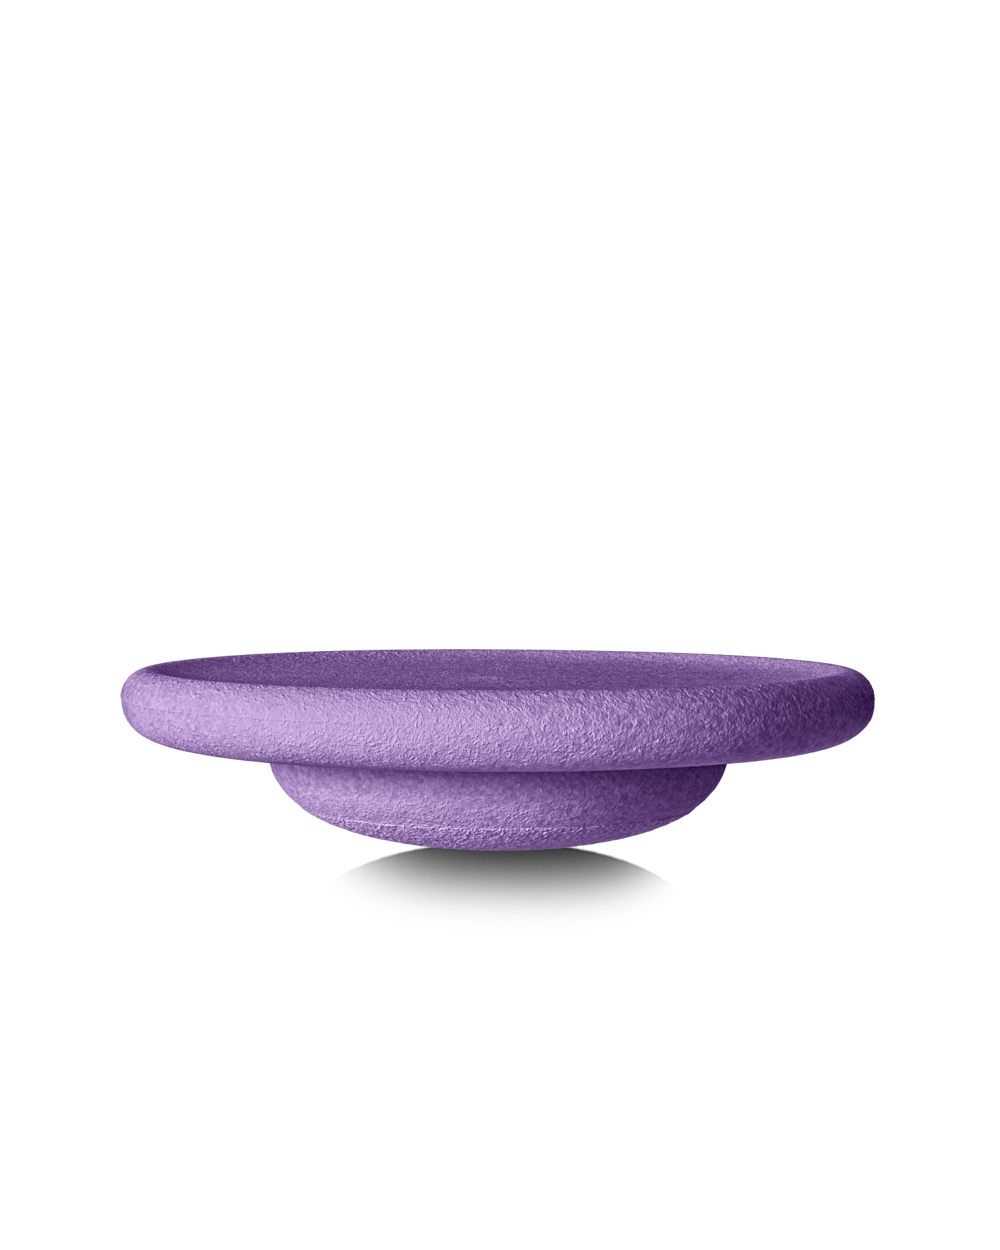 Stapelstein® Board Purple